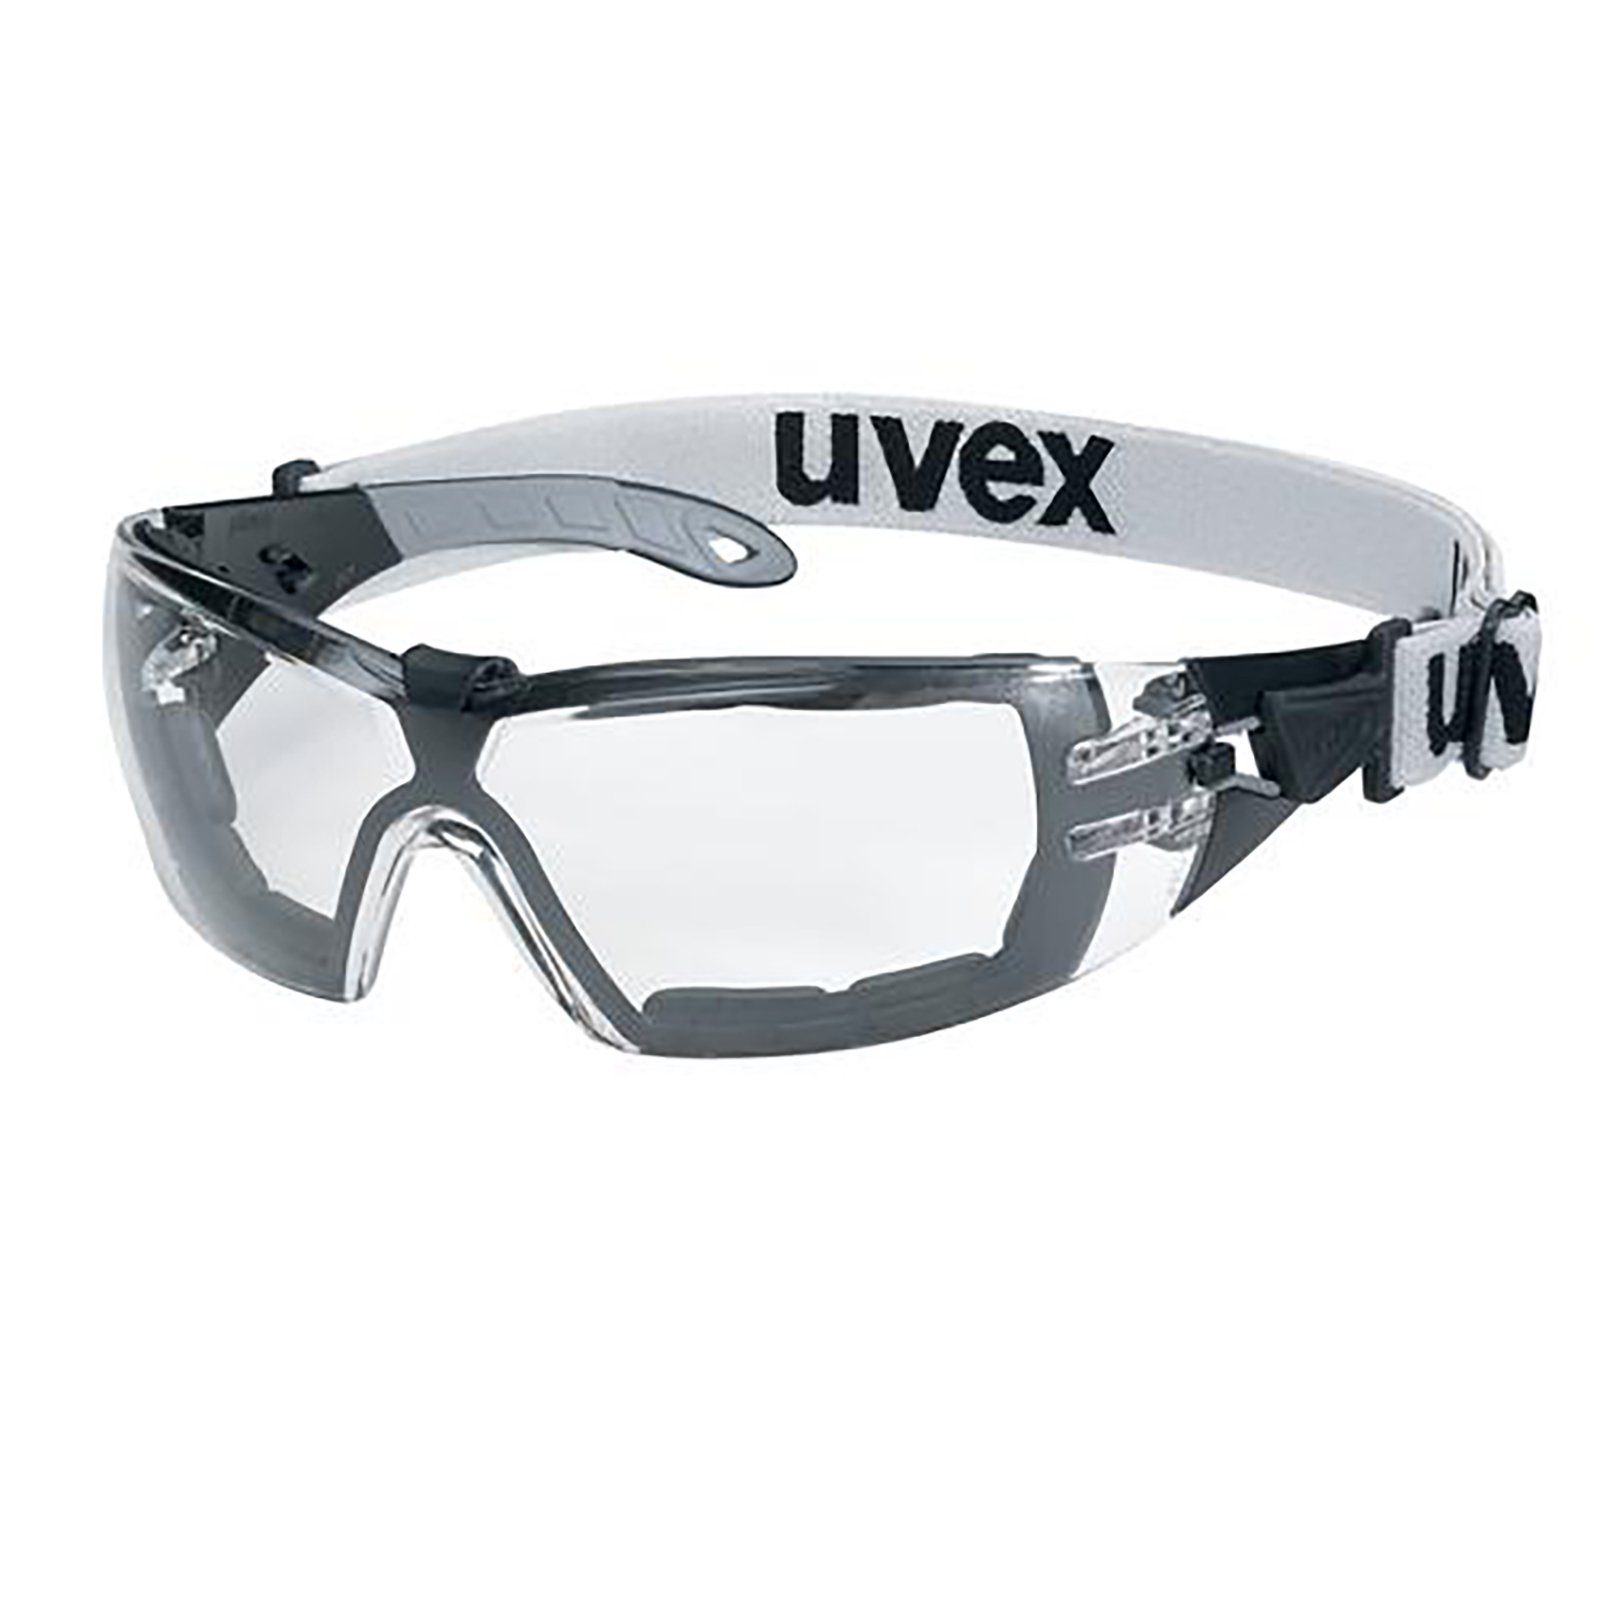 Uvex Arbeitsschutzbrille Bügelbrille pheos guard sv ext. 9192180